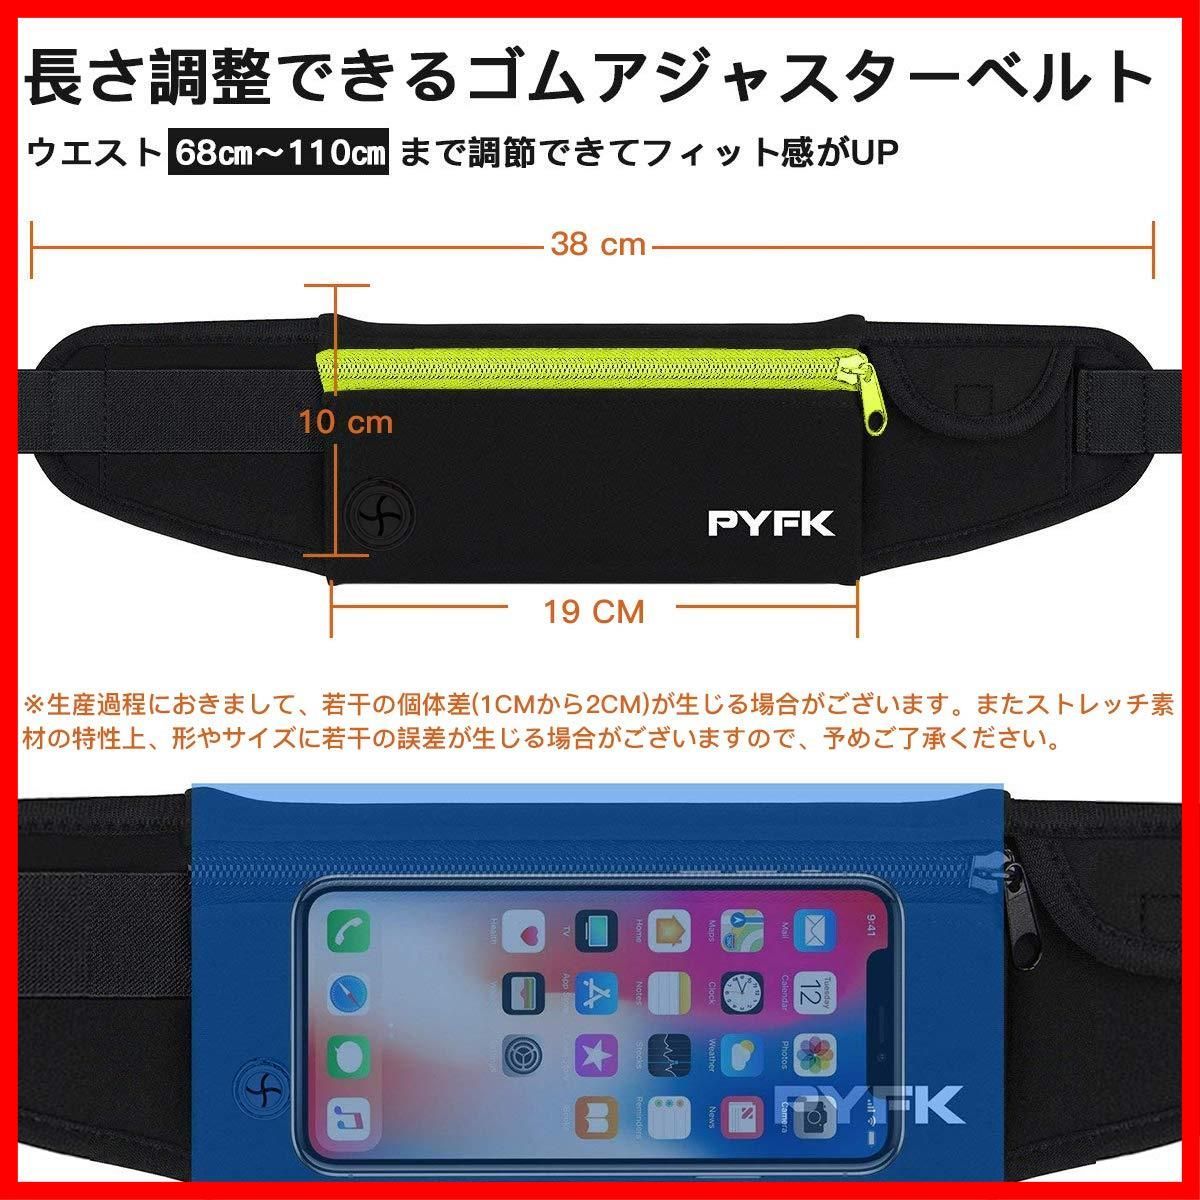 PYFK ランニングポーチ 軽量 防水 揺れない ウエストポーチ iPhone スマホ対応 ランニング ポーチ 薄型 おしゃれ メンズ レディース -  メルカリ